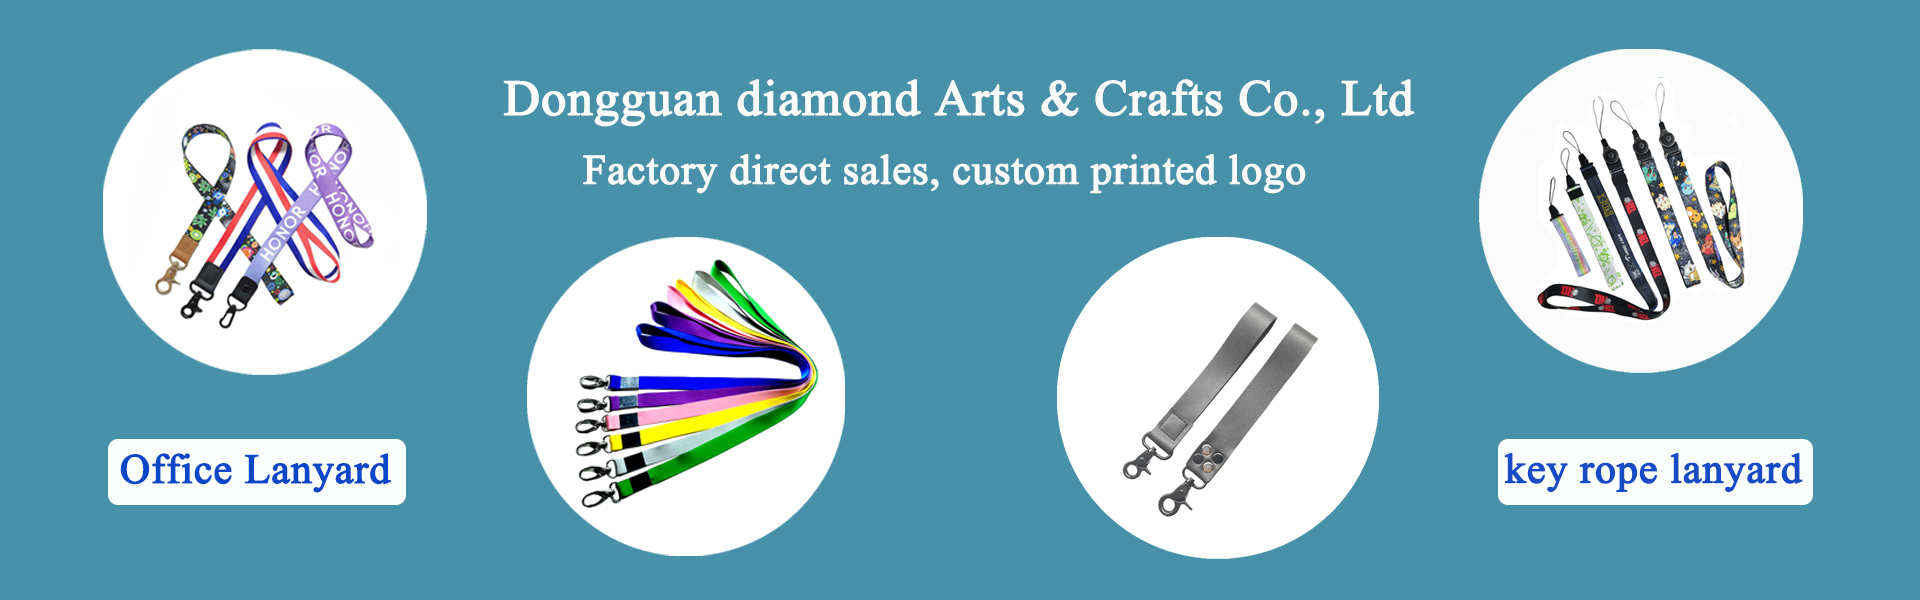 Lanyard, tillbehör till kläder, sällskapsdjur,Dongguan diamond Arts & Crafts Co., Ltd